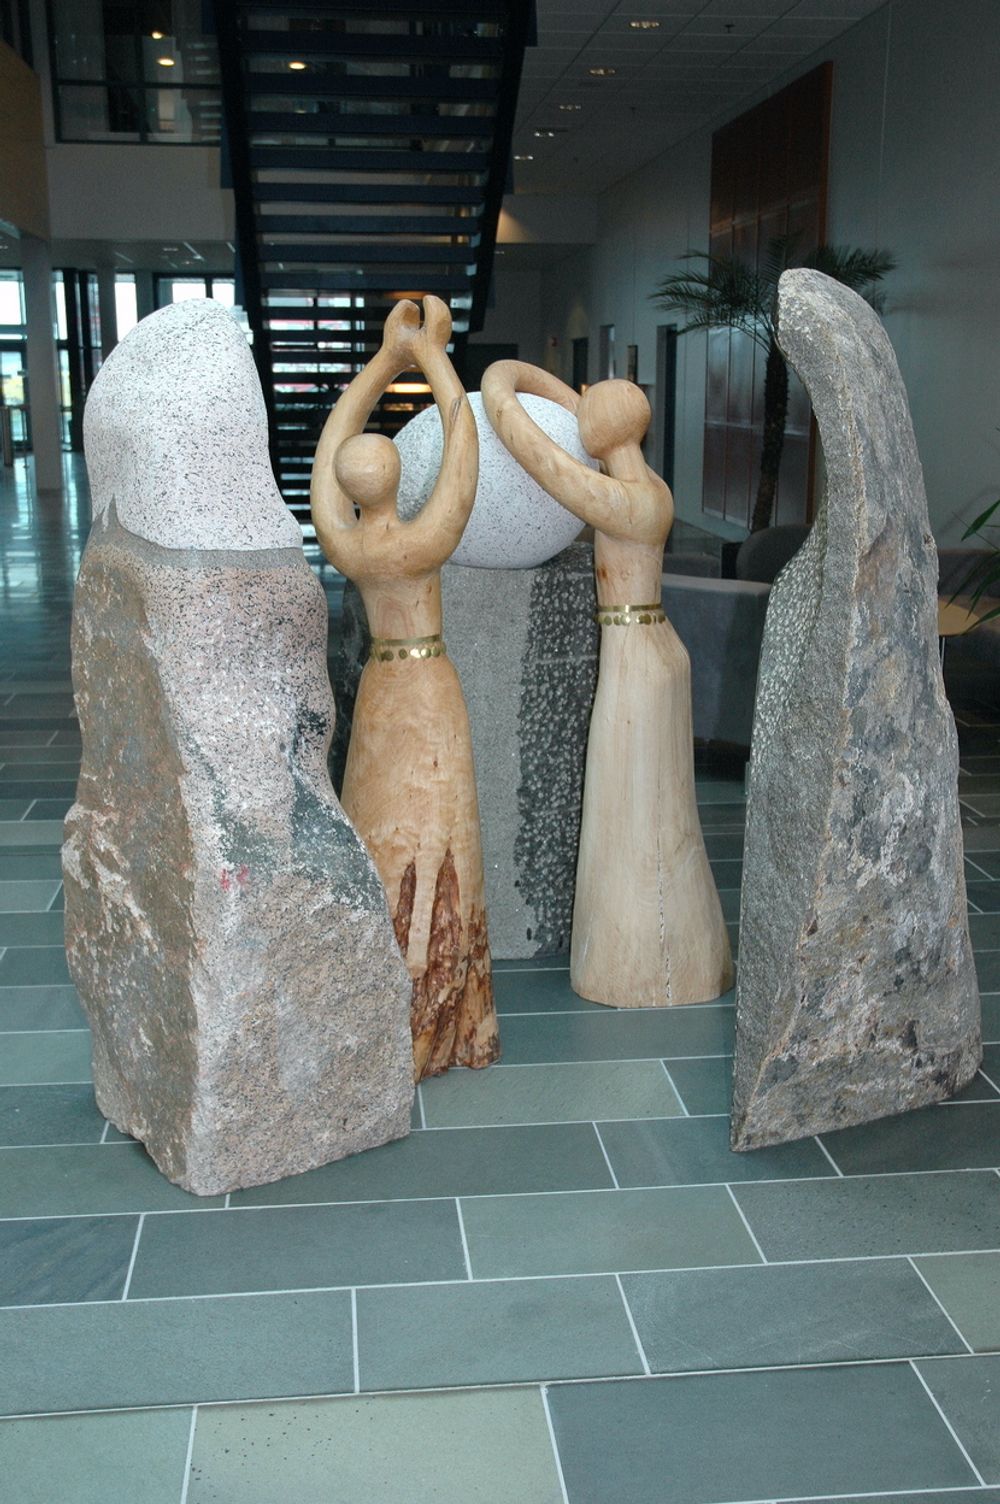 STALLOEN HJERTE: Det er også rom for kunstnerisk utsmykking. Denne skulpturen står i vestibylen på administrasjonsbygget. Skulpturen henspeiler på samisk kultur og er utført av den samiske kunstneren zzzz.zzzz